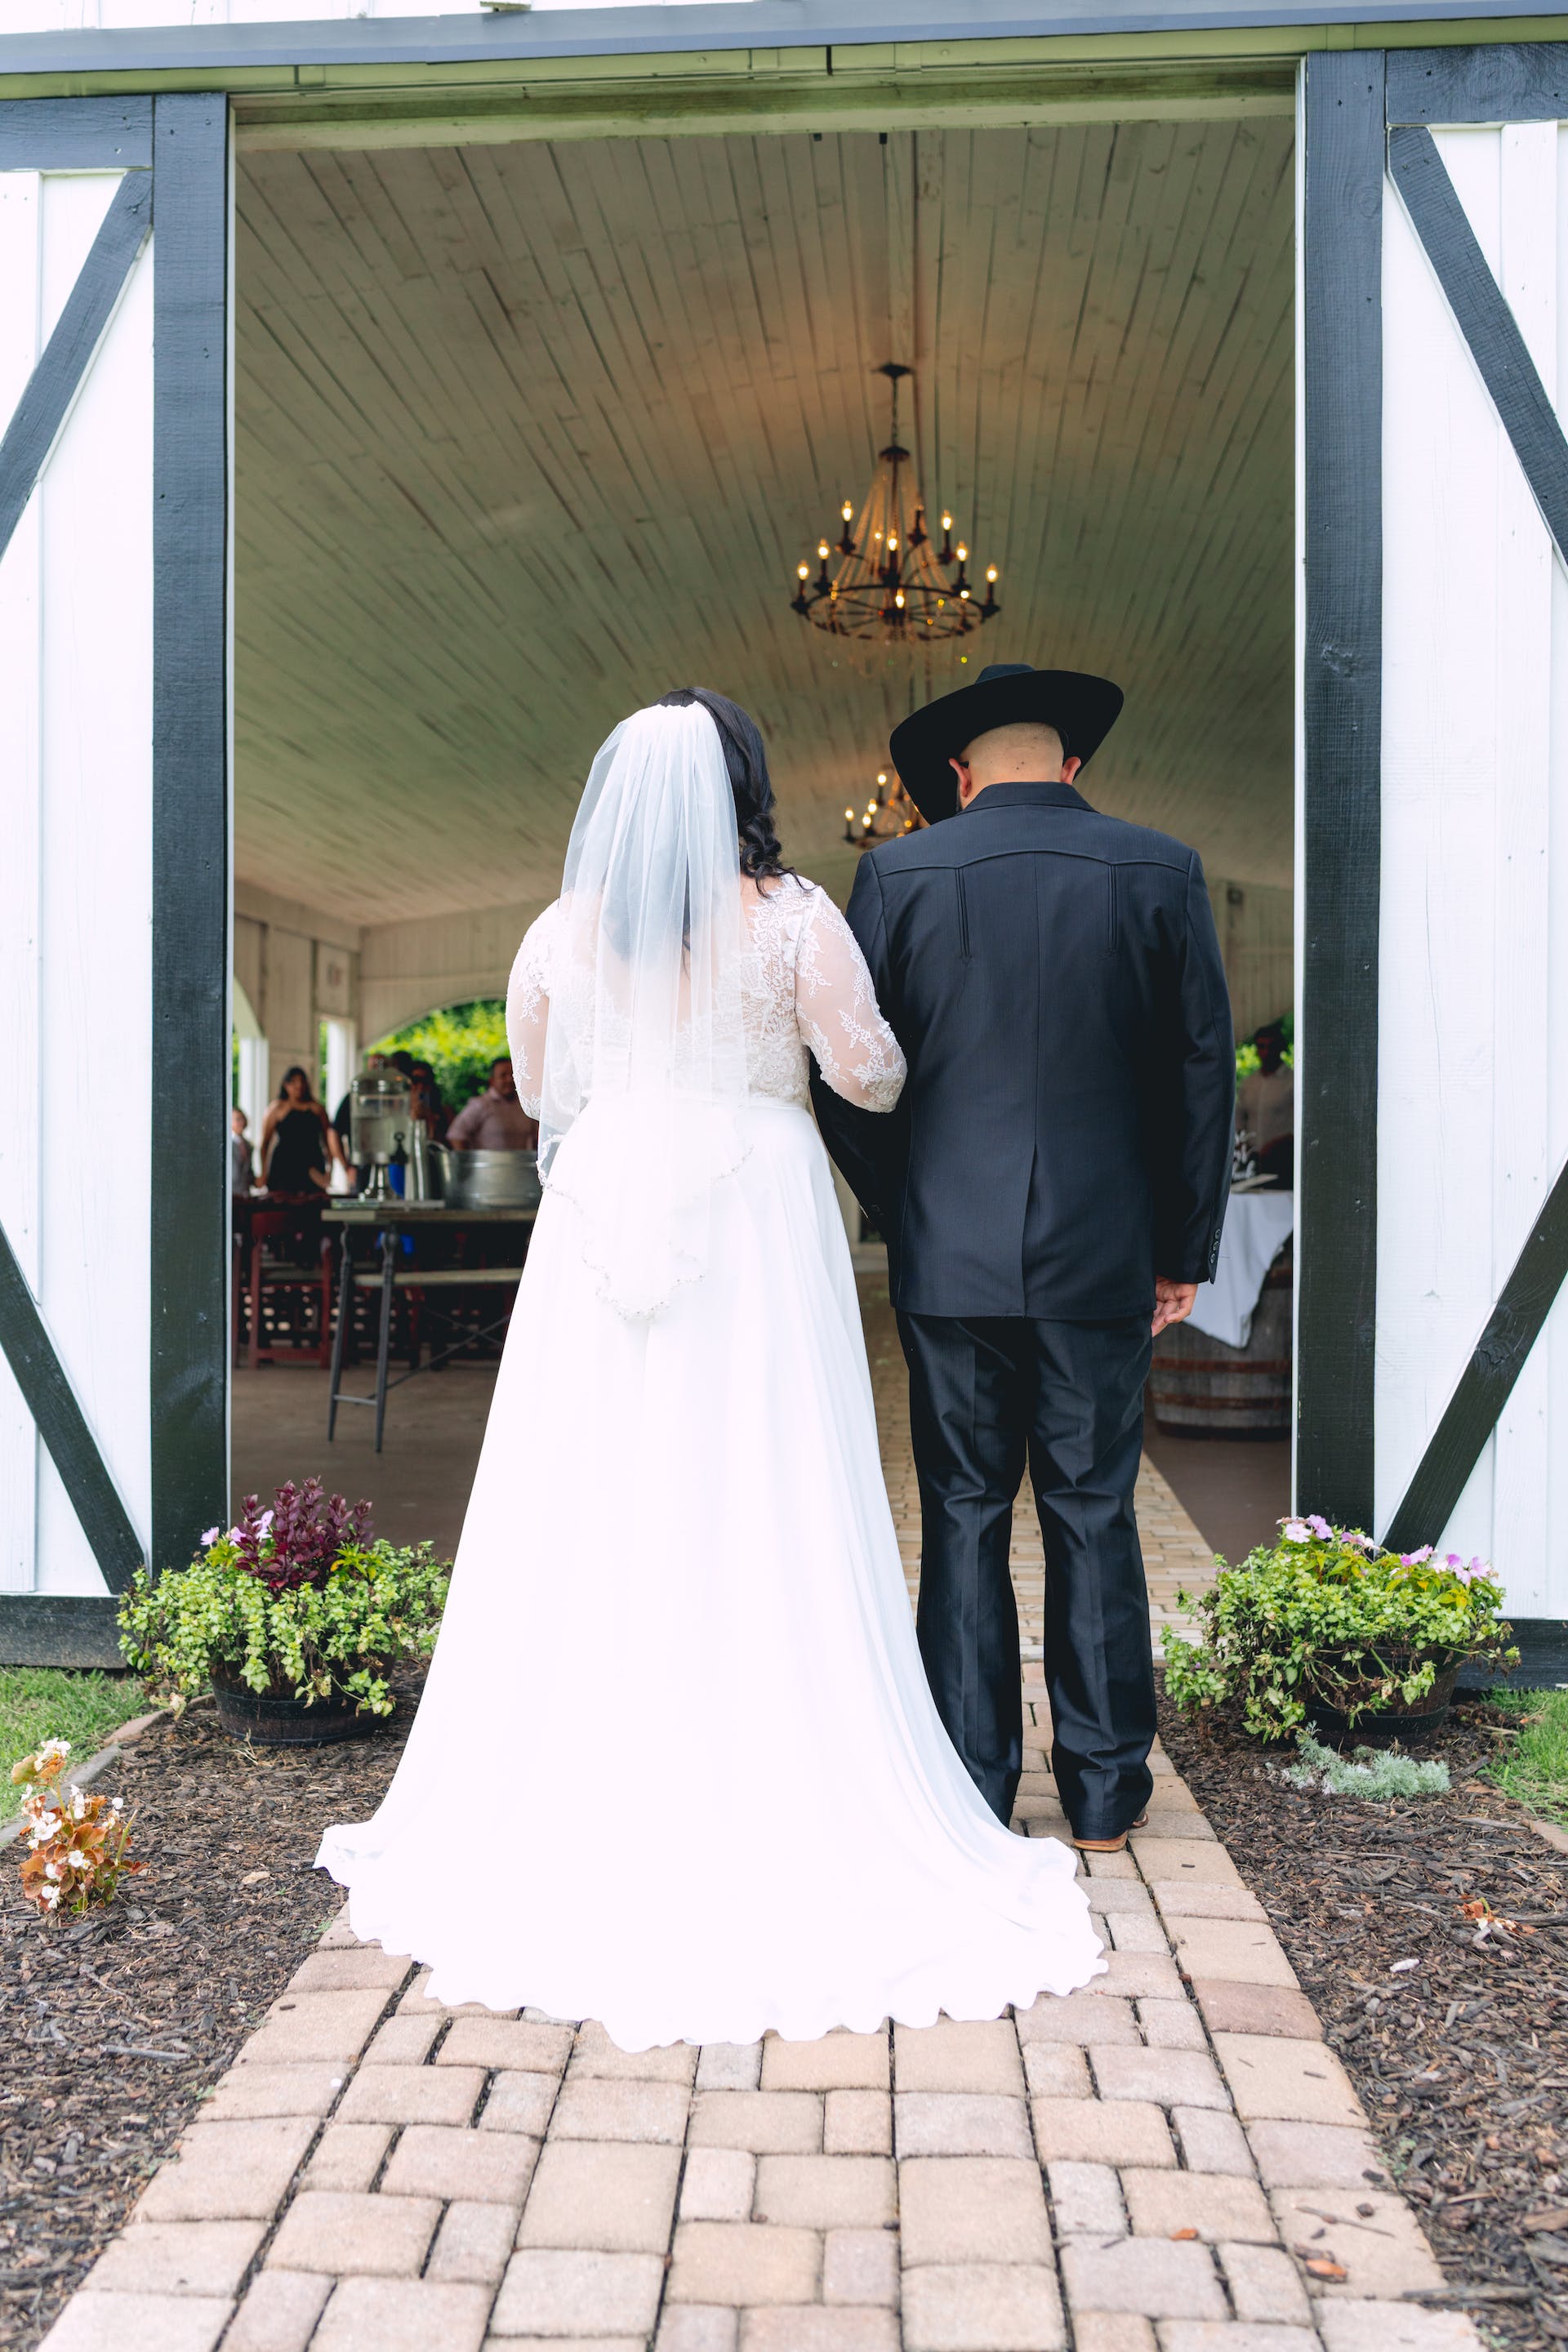 Una novia caminando hacia el altar con un hombre | Fuente: Pexels